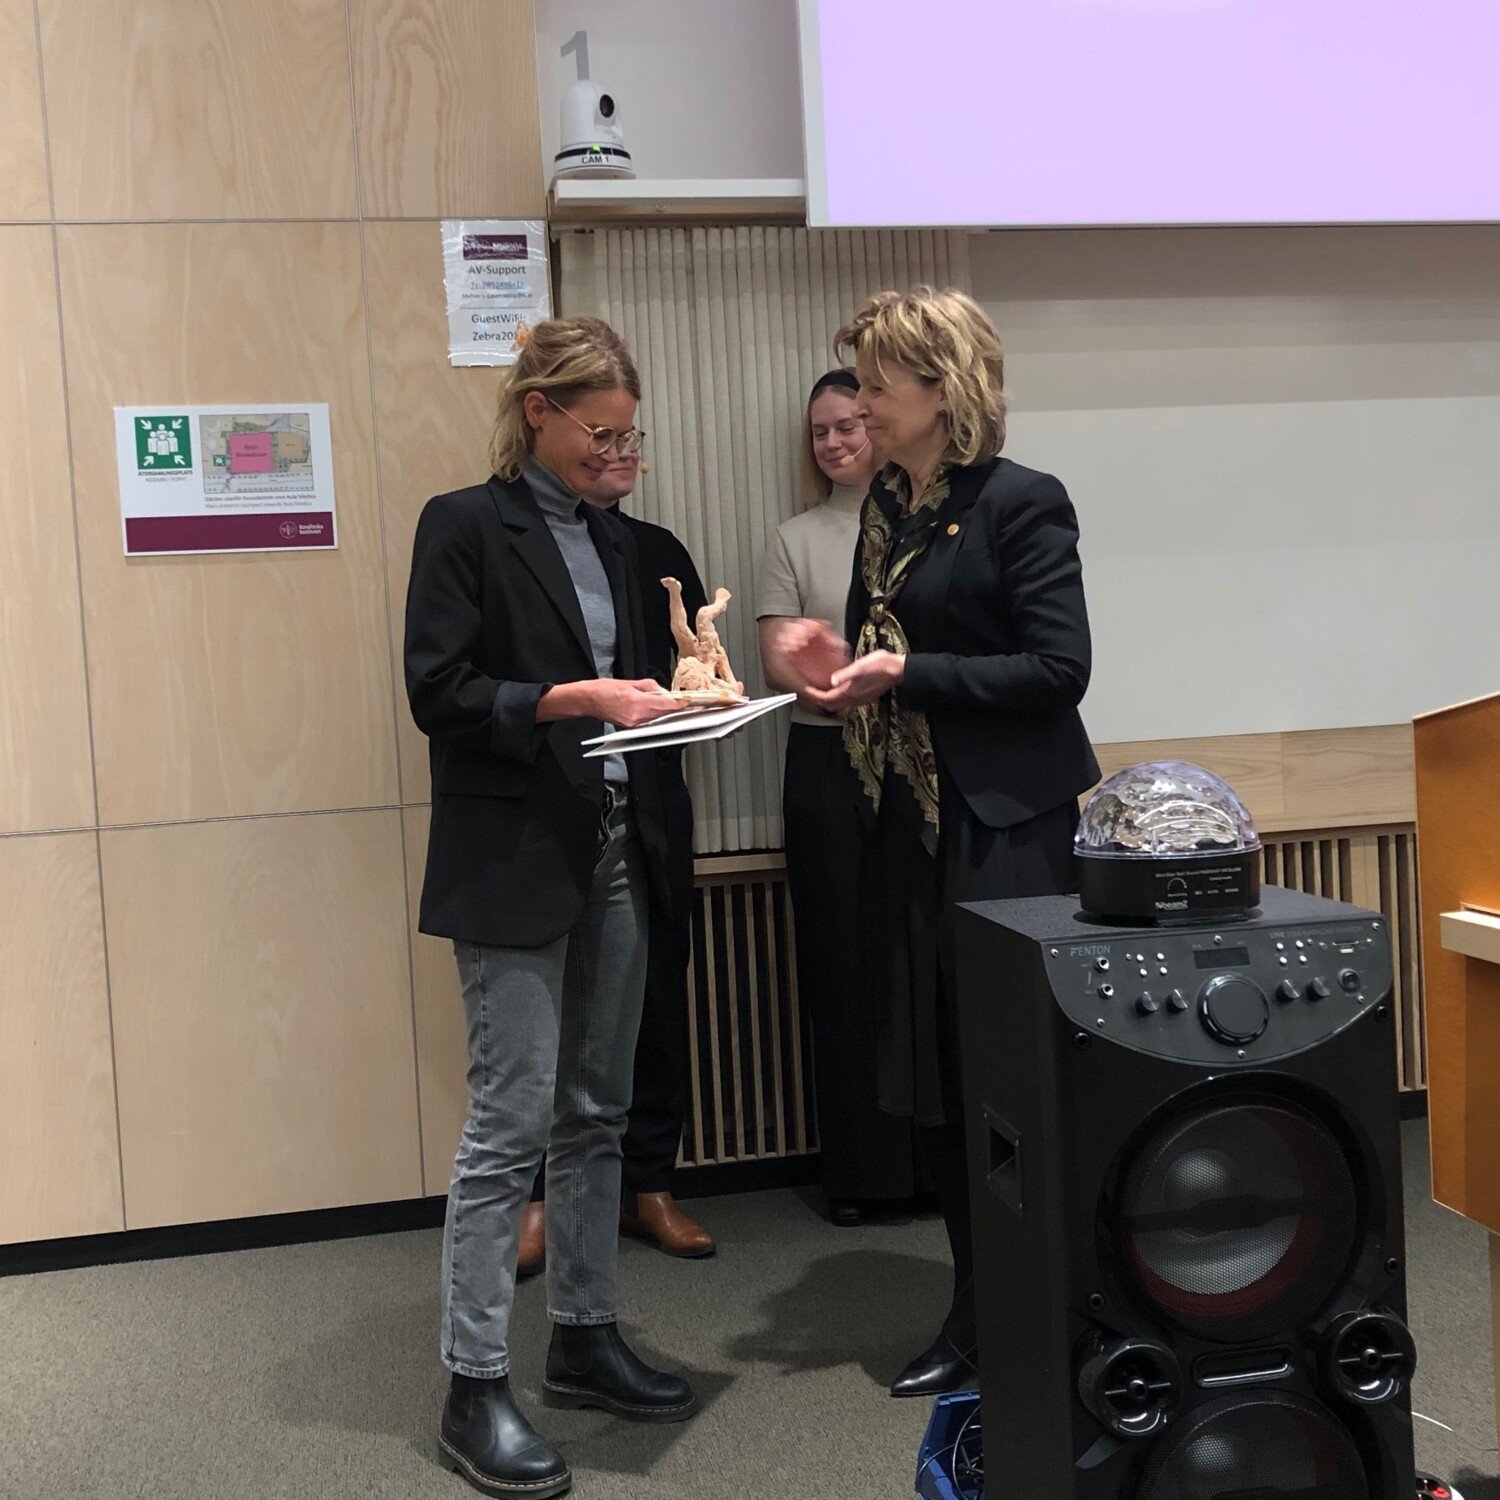 Annika Östman Wernerson presents the award to Anna Nordlander.